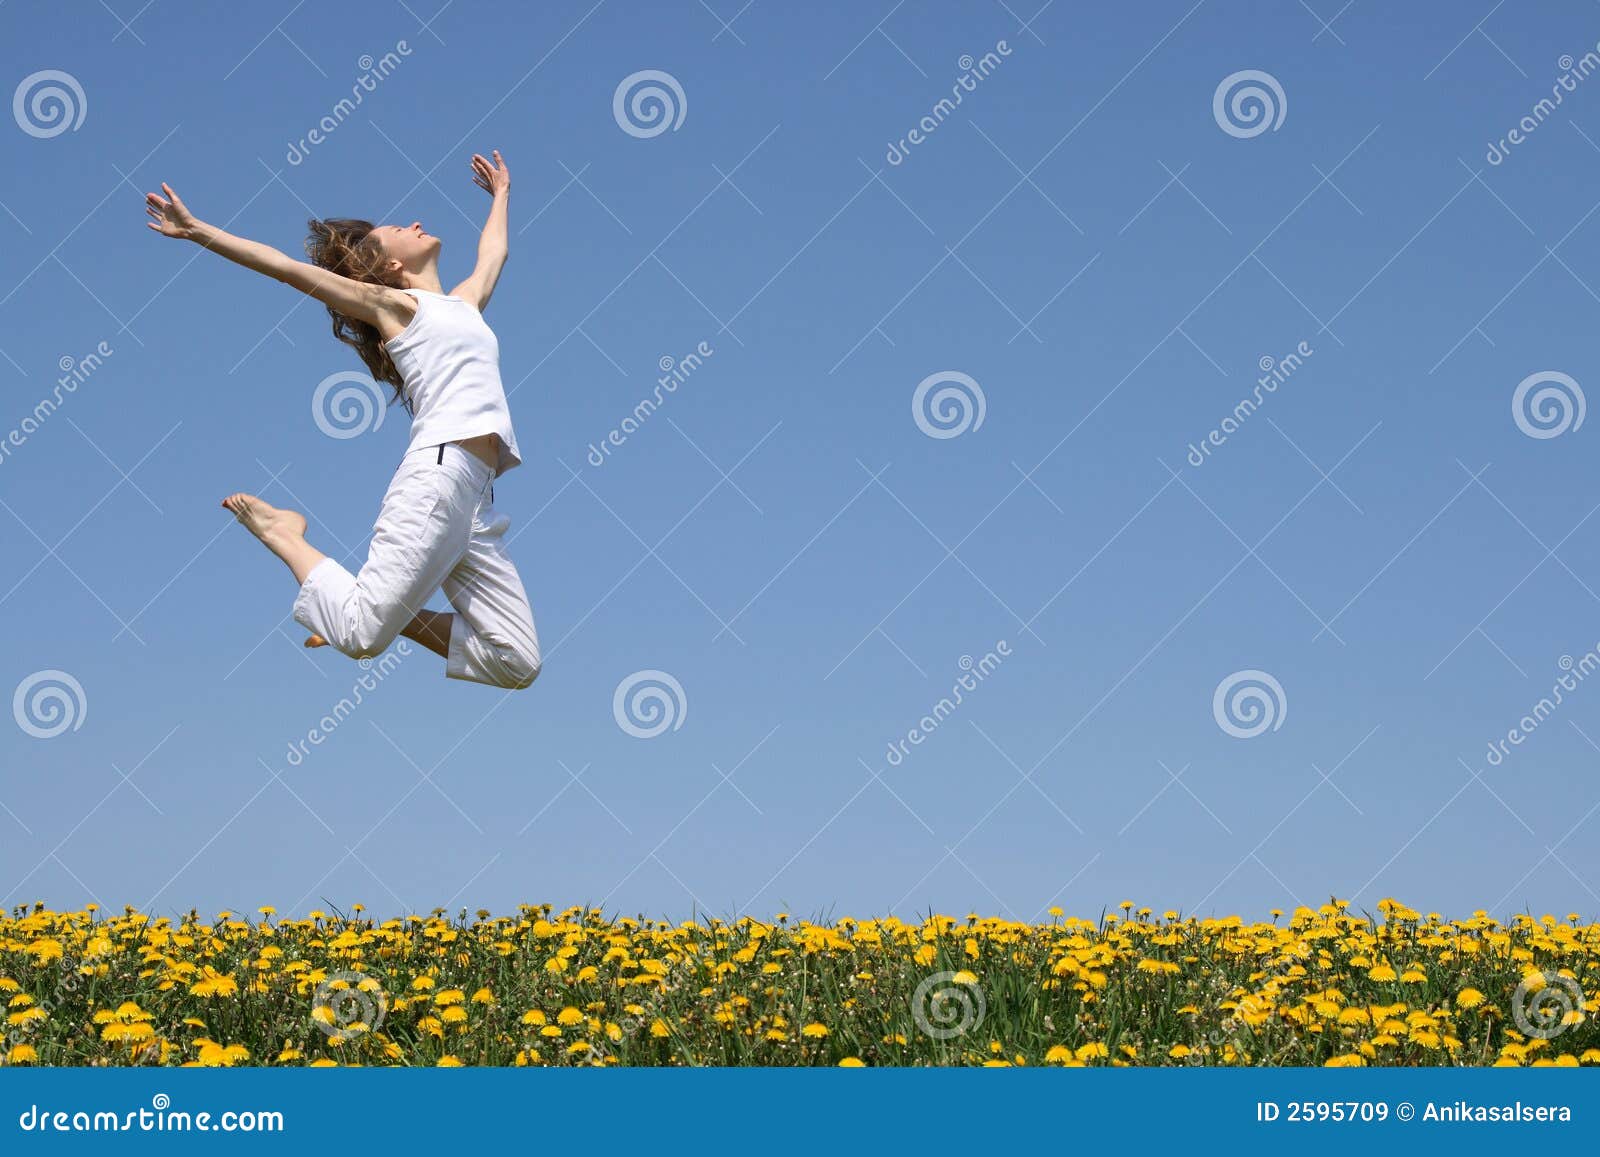 girl in a beautiful jump